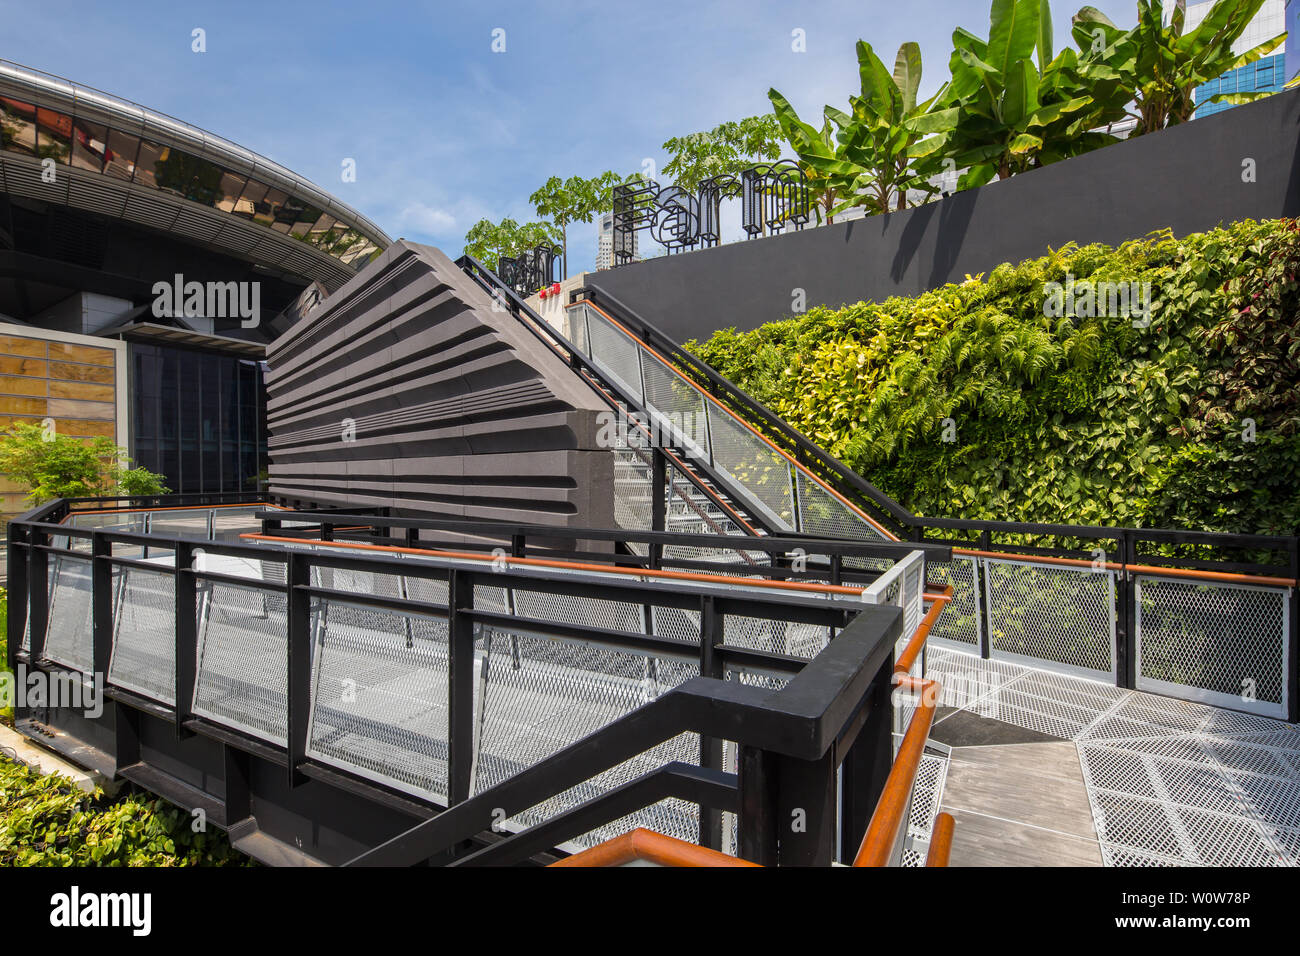 Design of urban farm rooftop garden at Funan Mall, Singapore Stock Photo